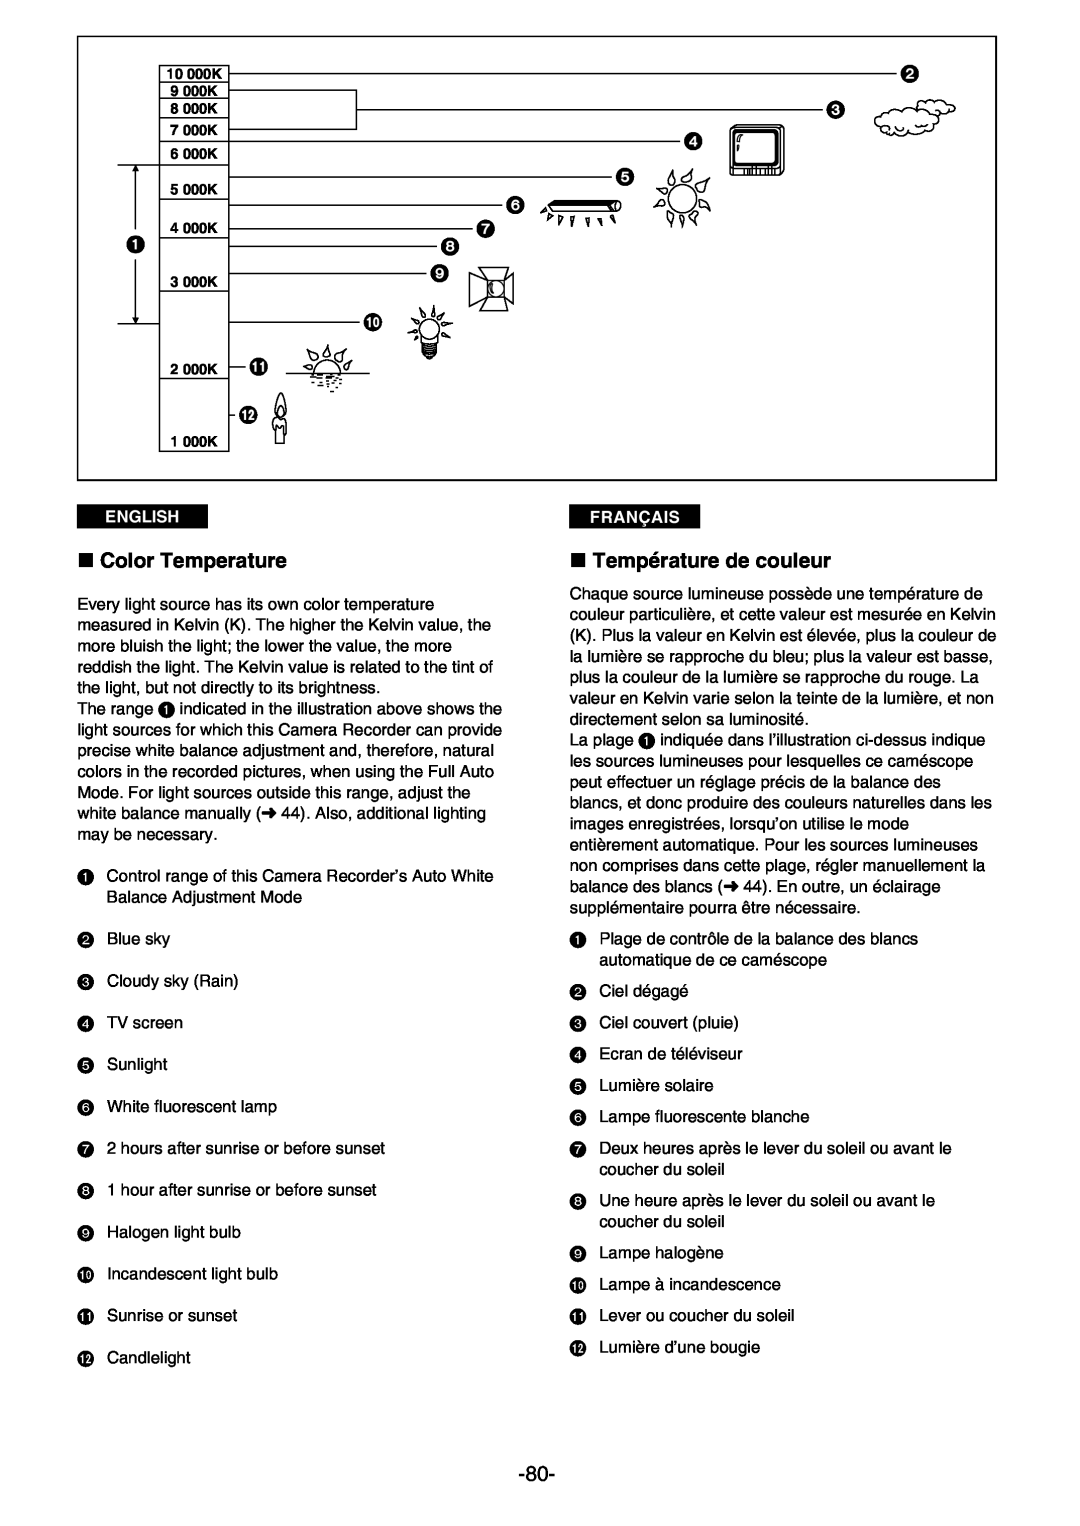 Panasonic AG- DVC 15P manual » Color Temperature, » Température de couleur, English, Français 